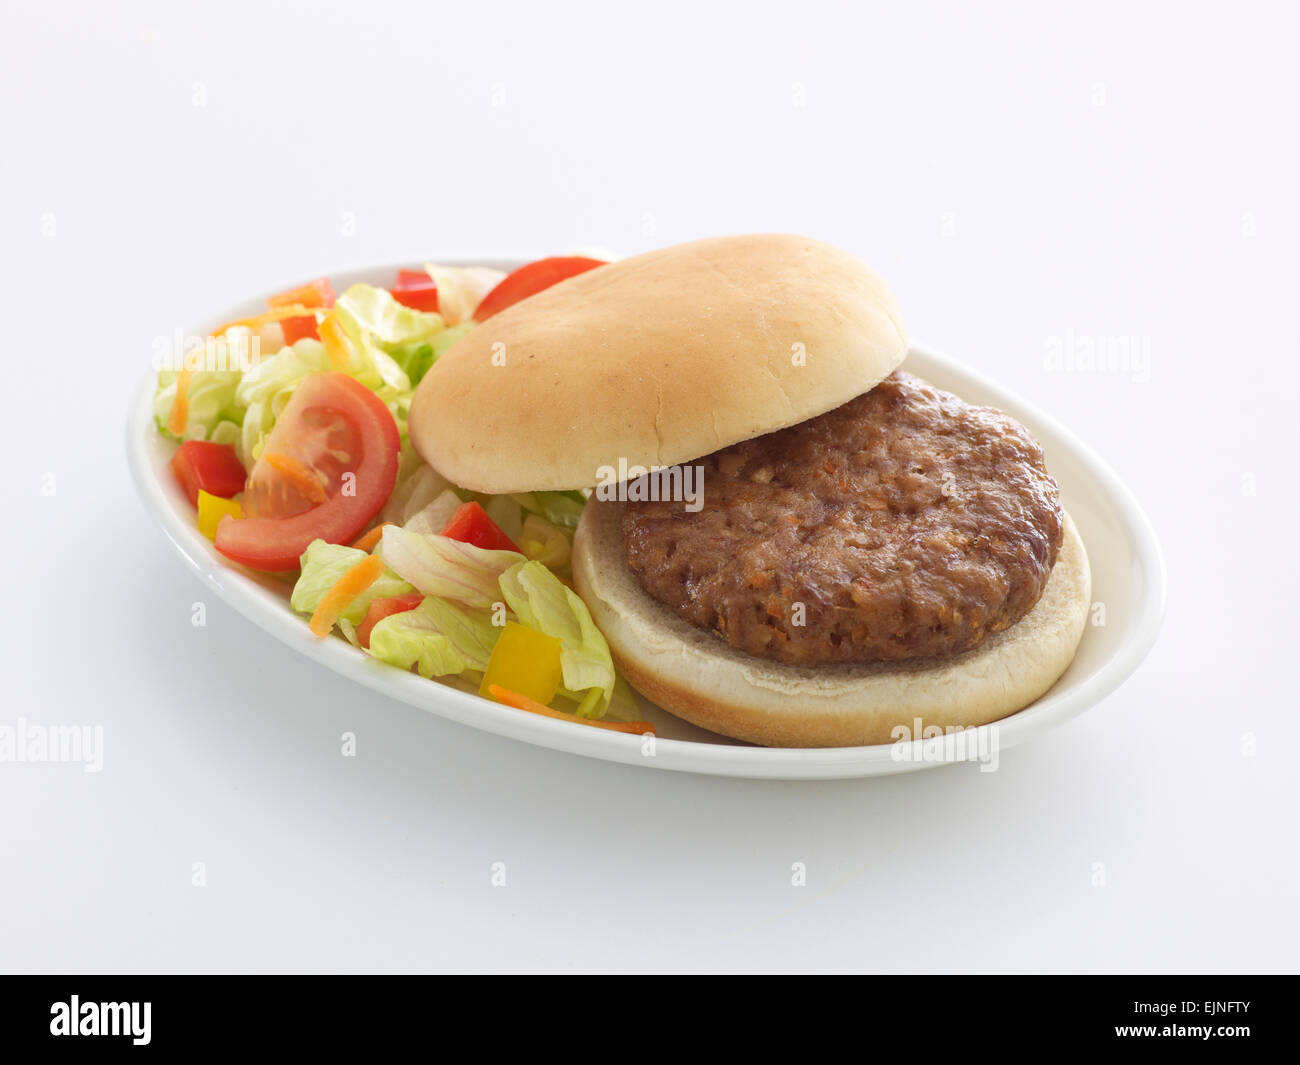 Plain burger bun hi-res stock photography and images - Alamy